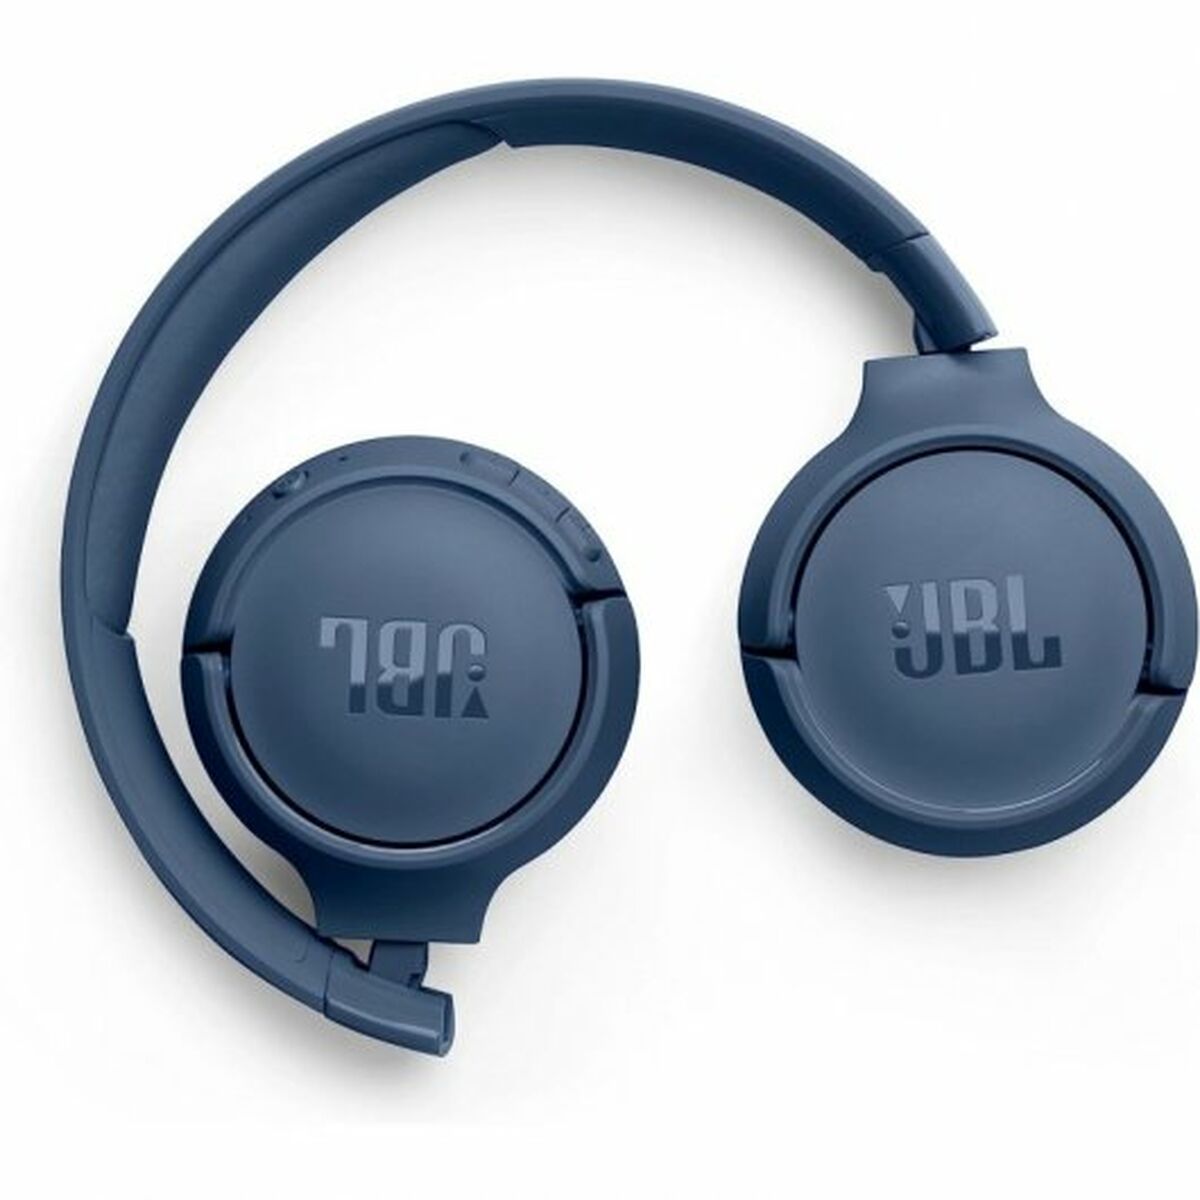 Kaufe Kopfhörer mit Mikrofon JBL 520BT Blau bei AWK Flagship um € 84.00